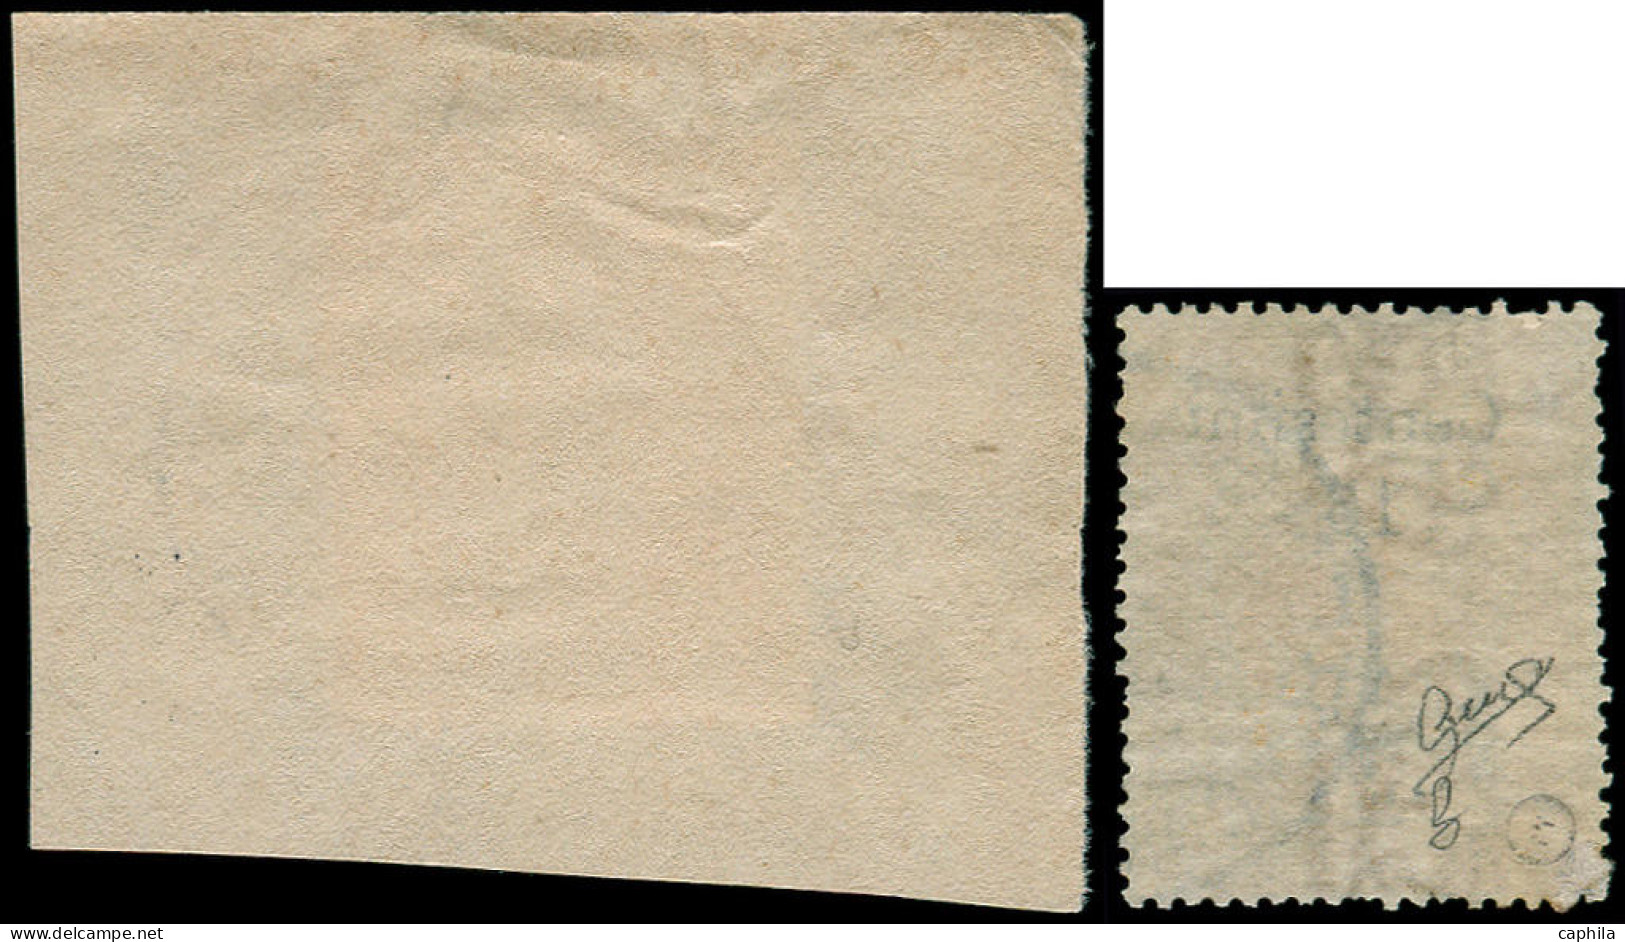 SOMALIE ITALIENNE Poste O - 8/9, Certificat Biondi, 9 Sur Fragment: Timbres De 1903 Surchargés (Sas. 8/9) - Cote: 2200 - Somalië